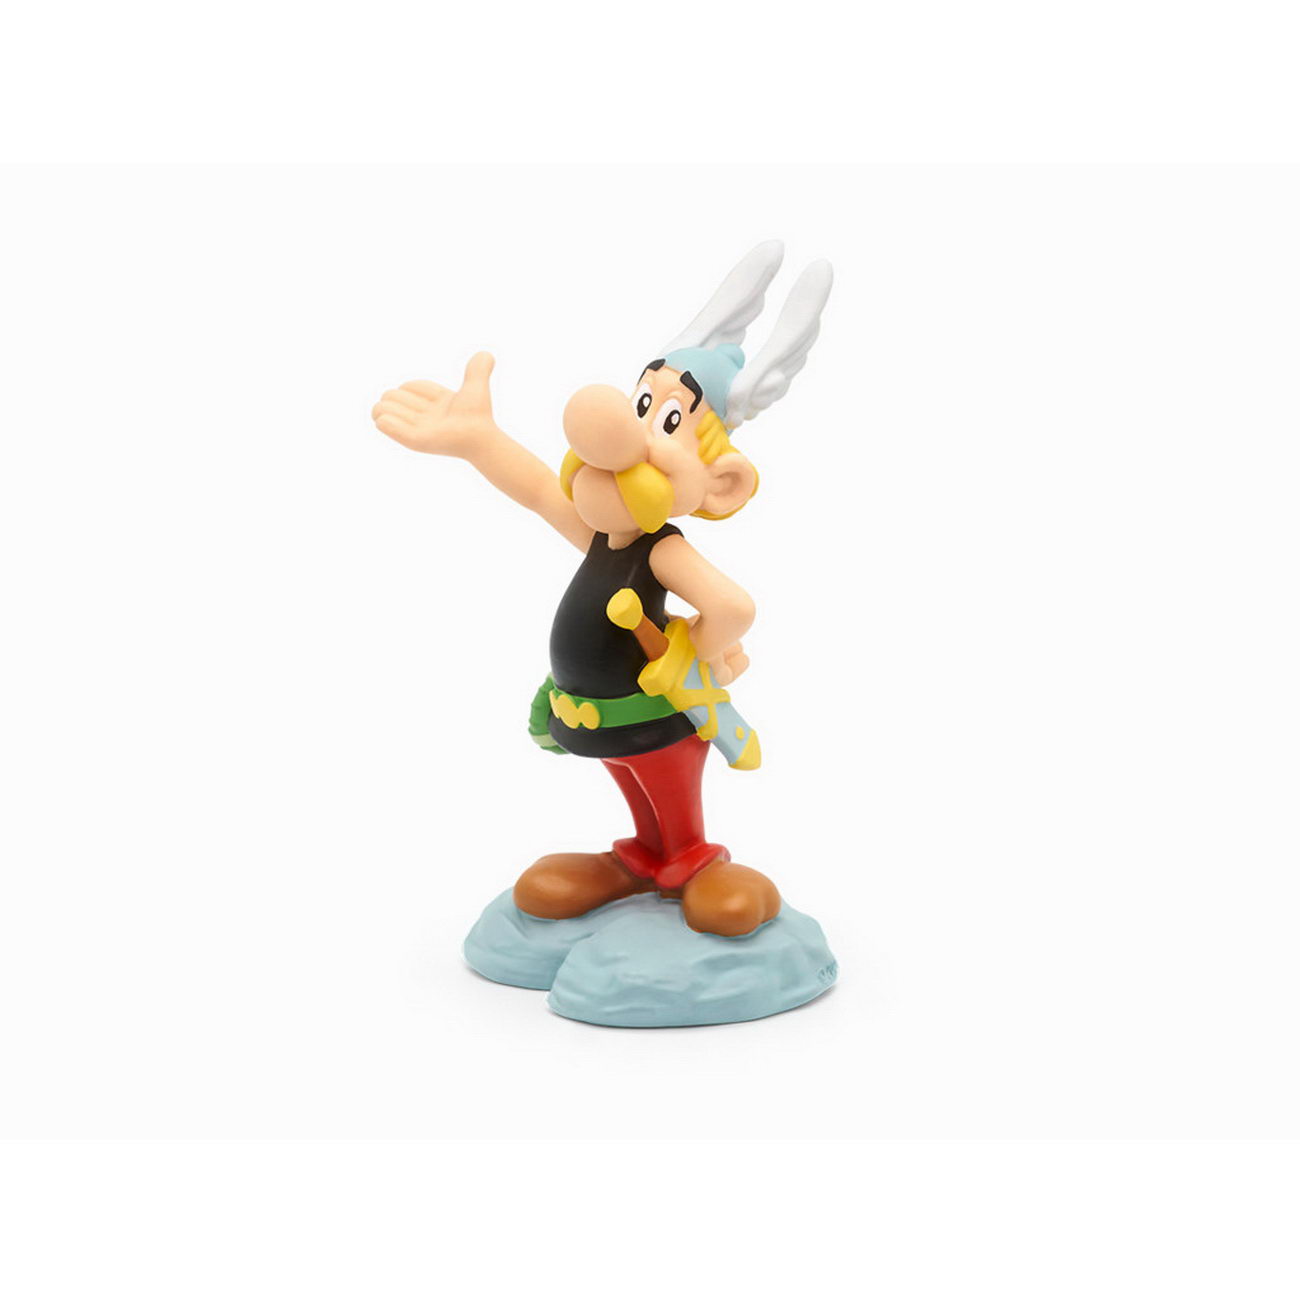 Tonies - Asterix - Asterix der Gallier - Hörspiel